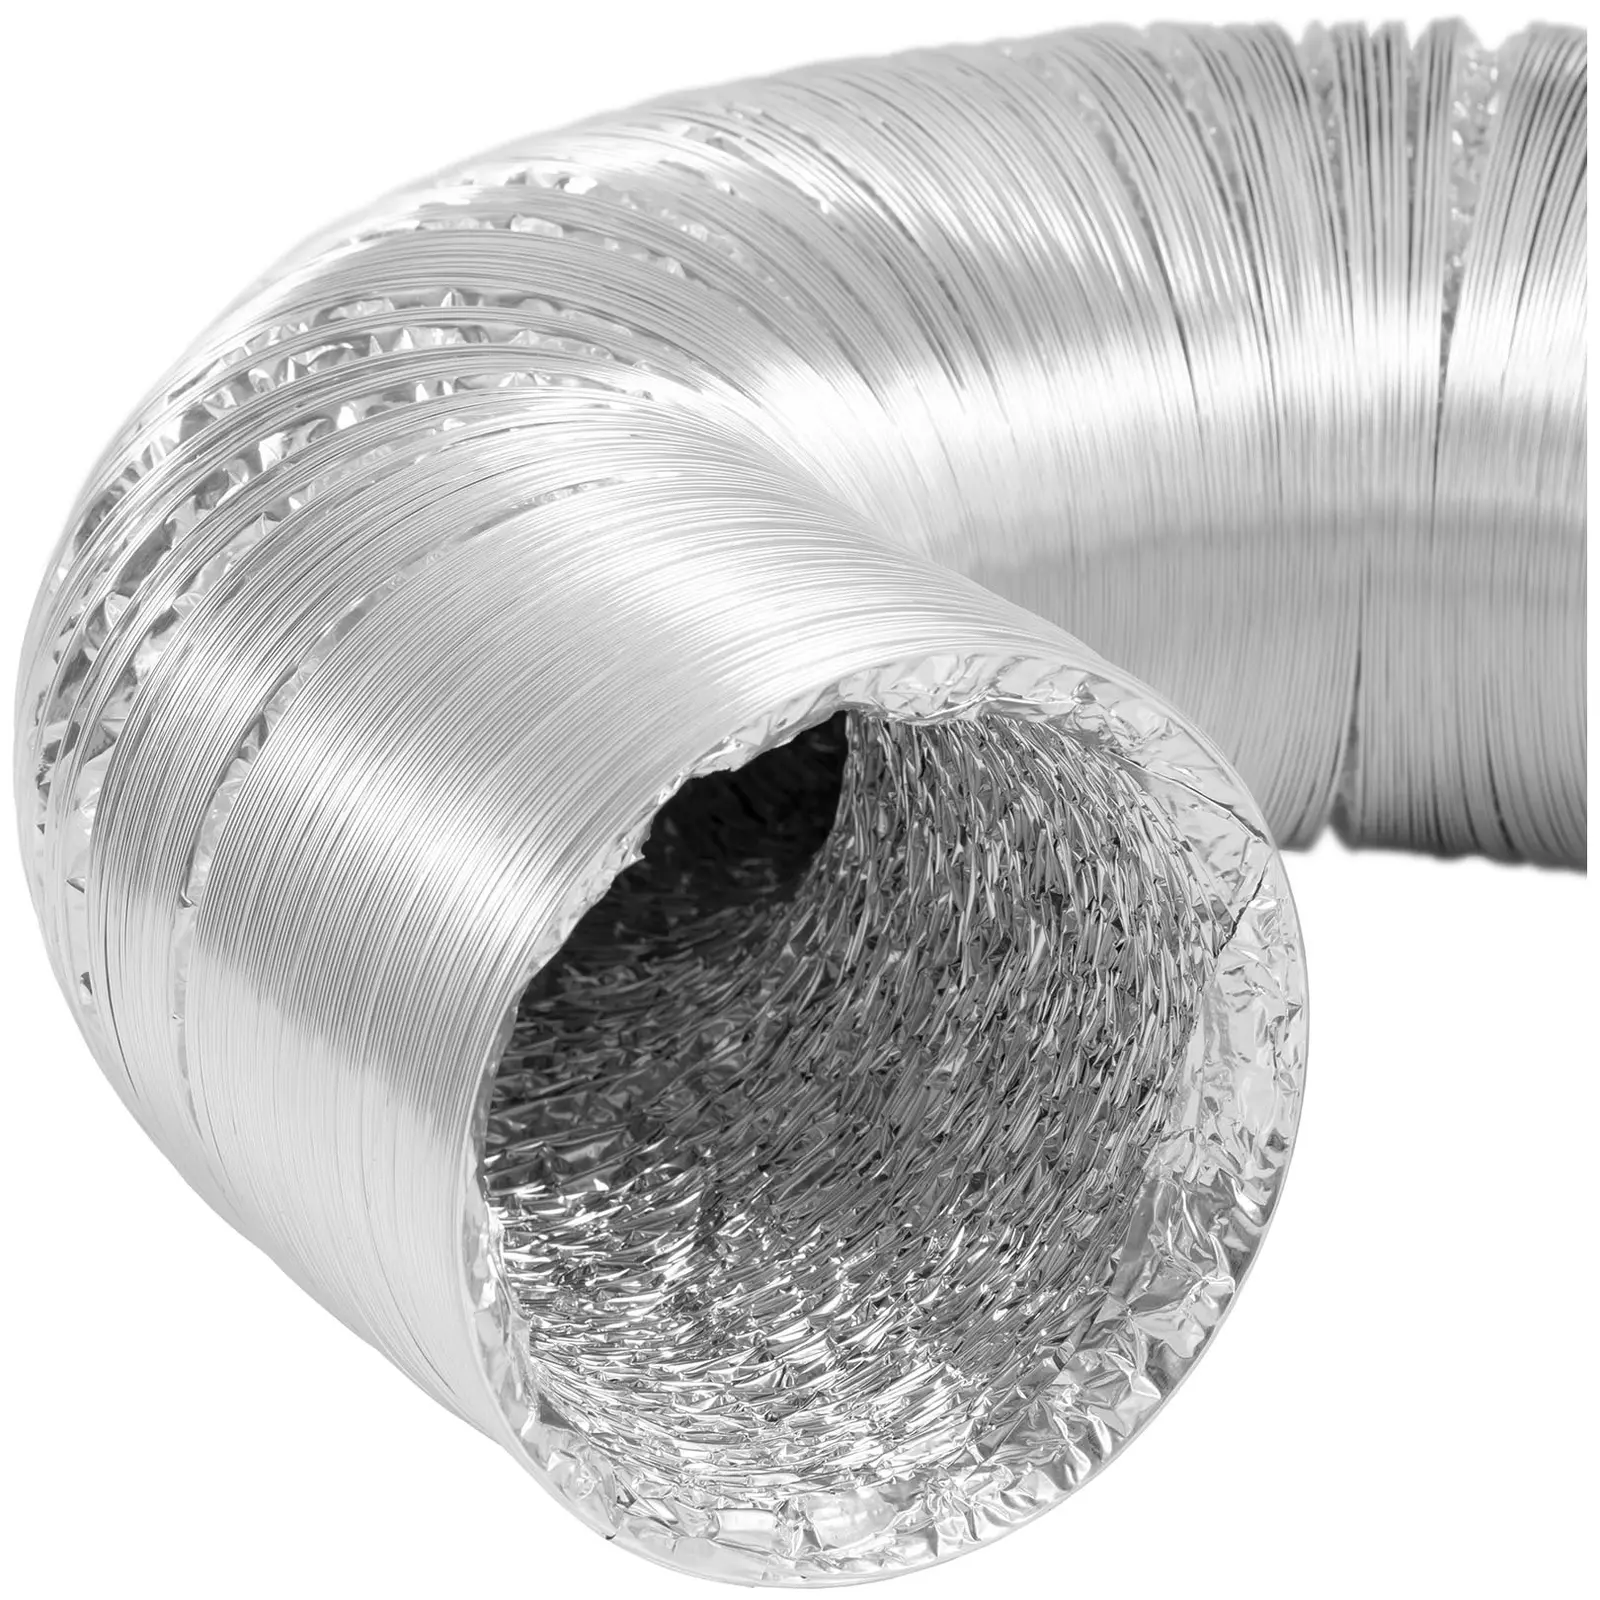 Elszívó tömlő - Ø 125 mm - 10 m hosszú - alumínium